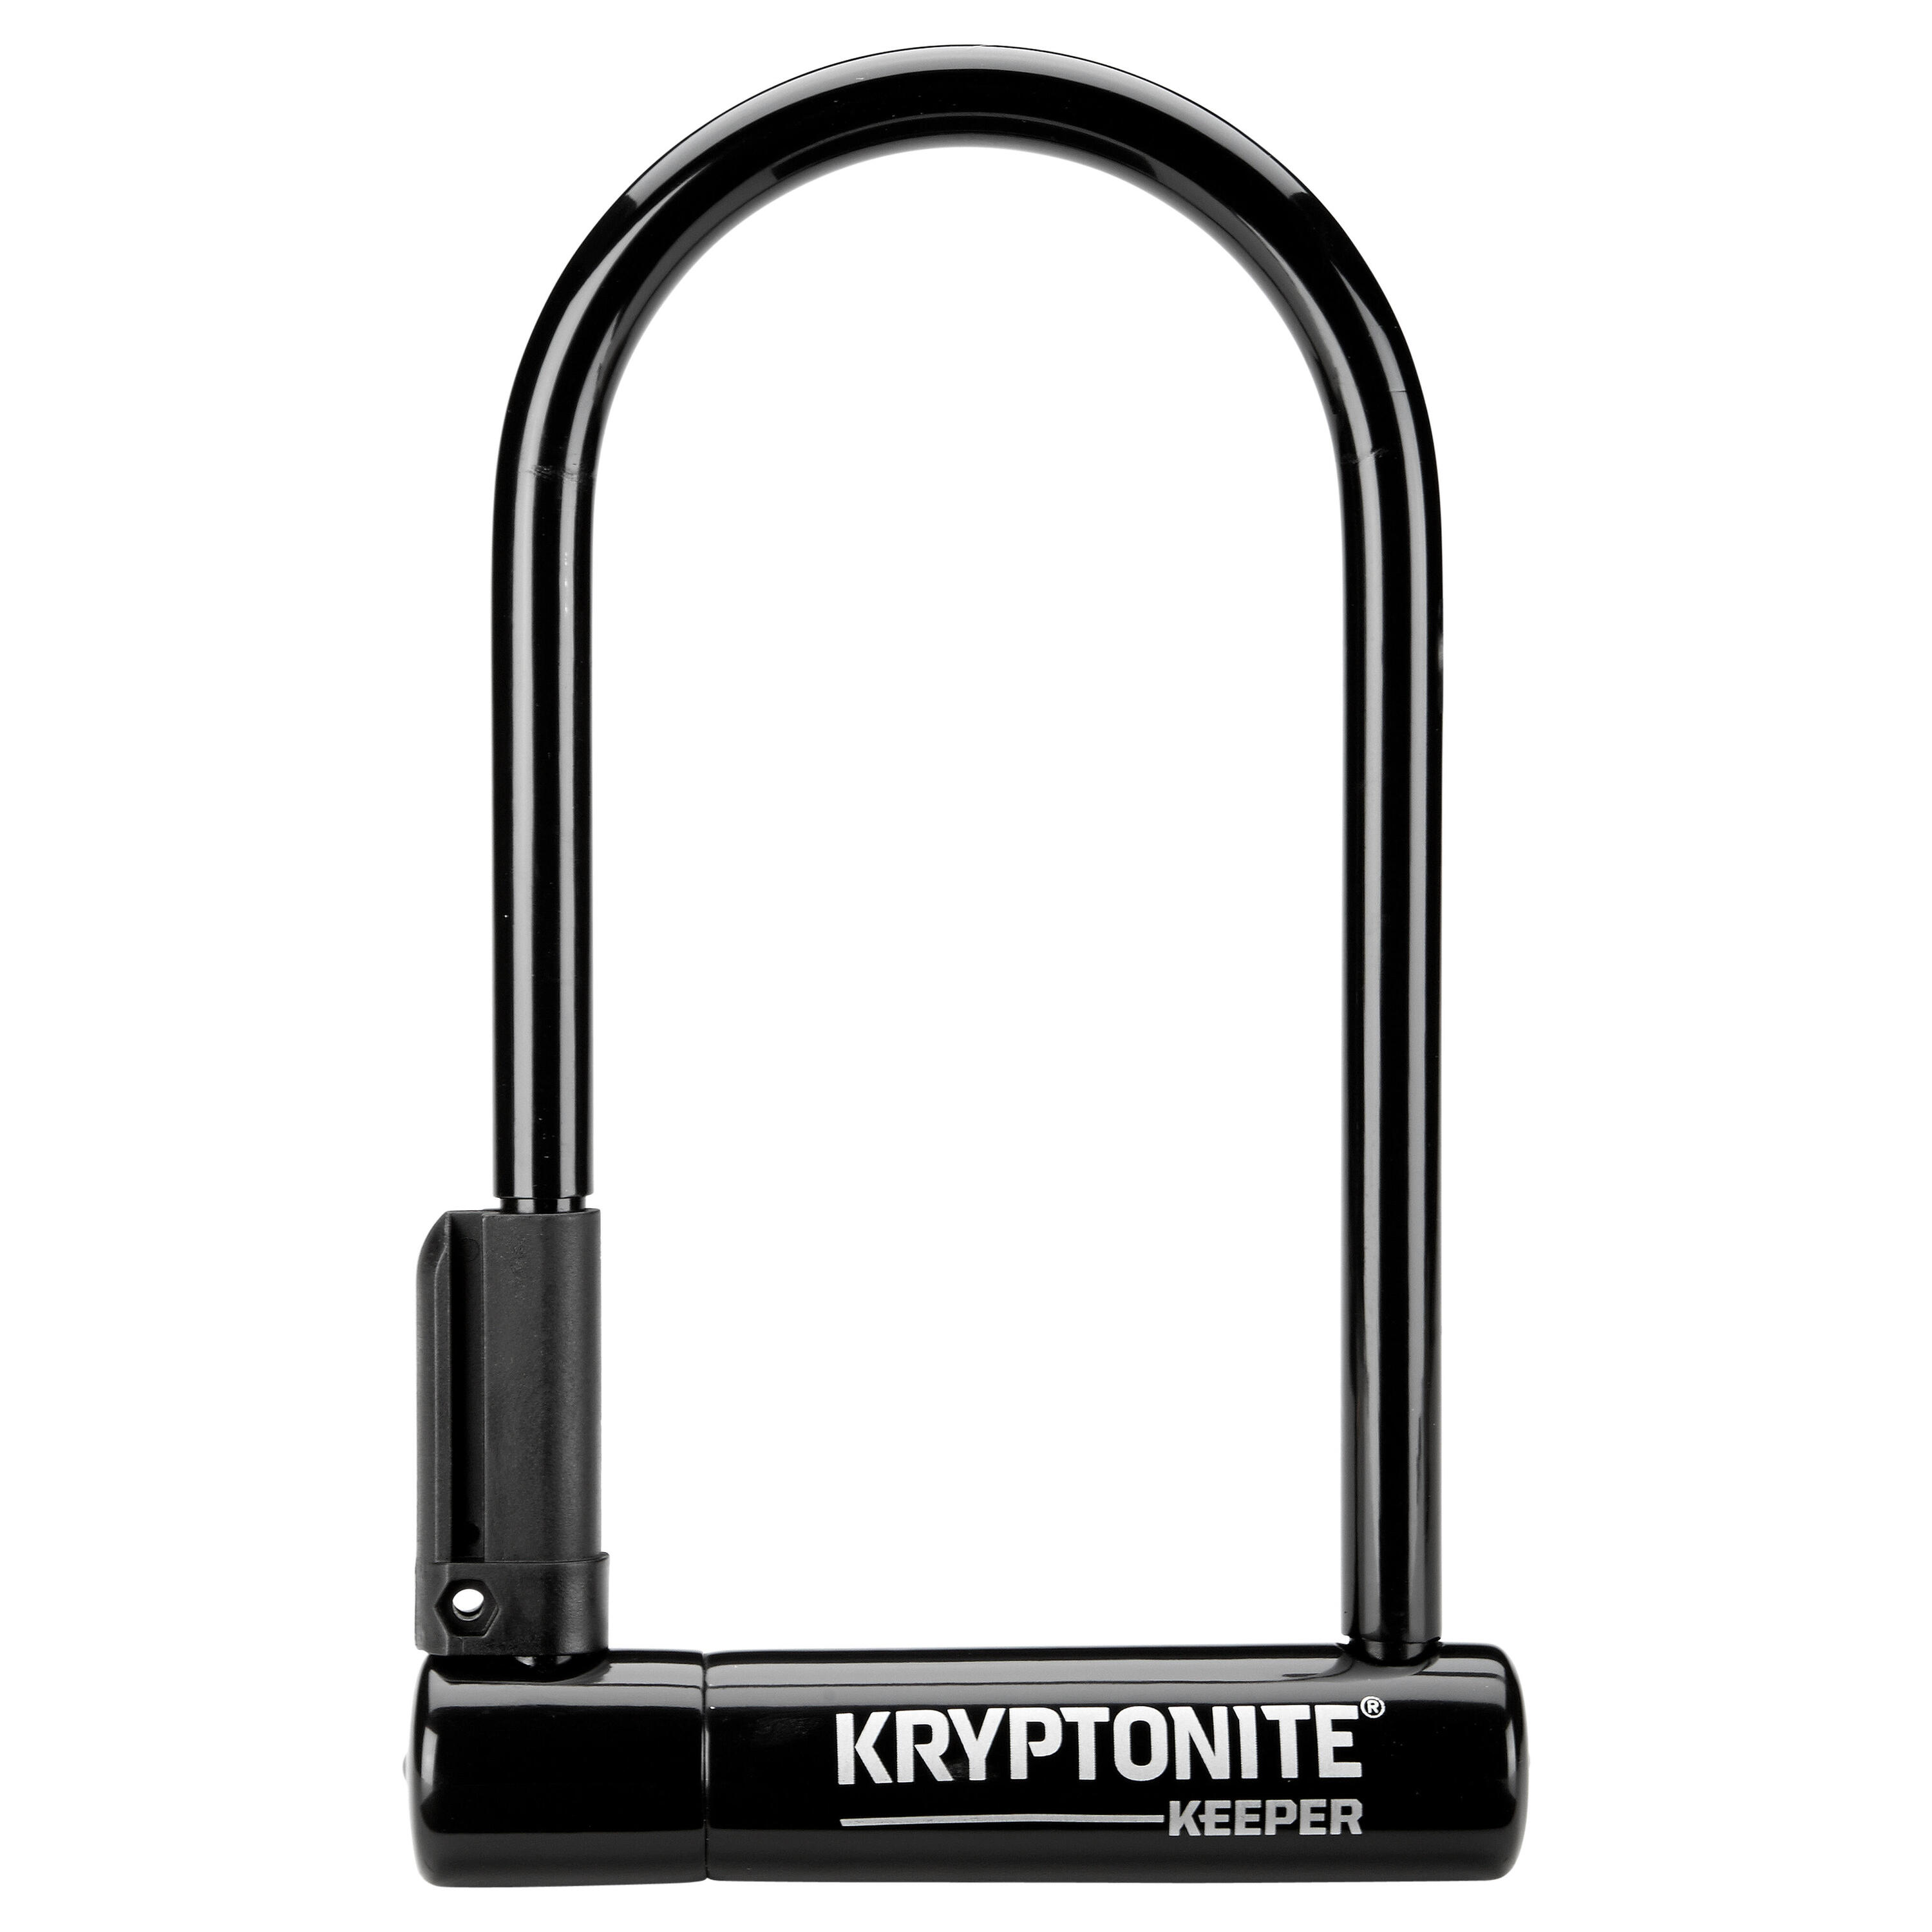 KRYPTONITE Kryptonite Keeper Original Standard U-Lock with bracket